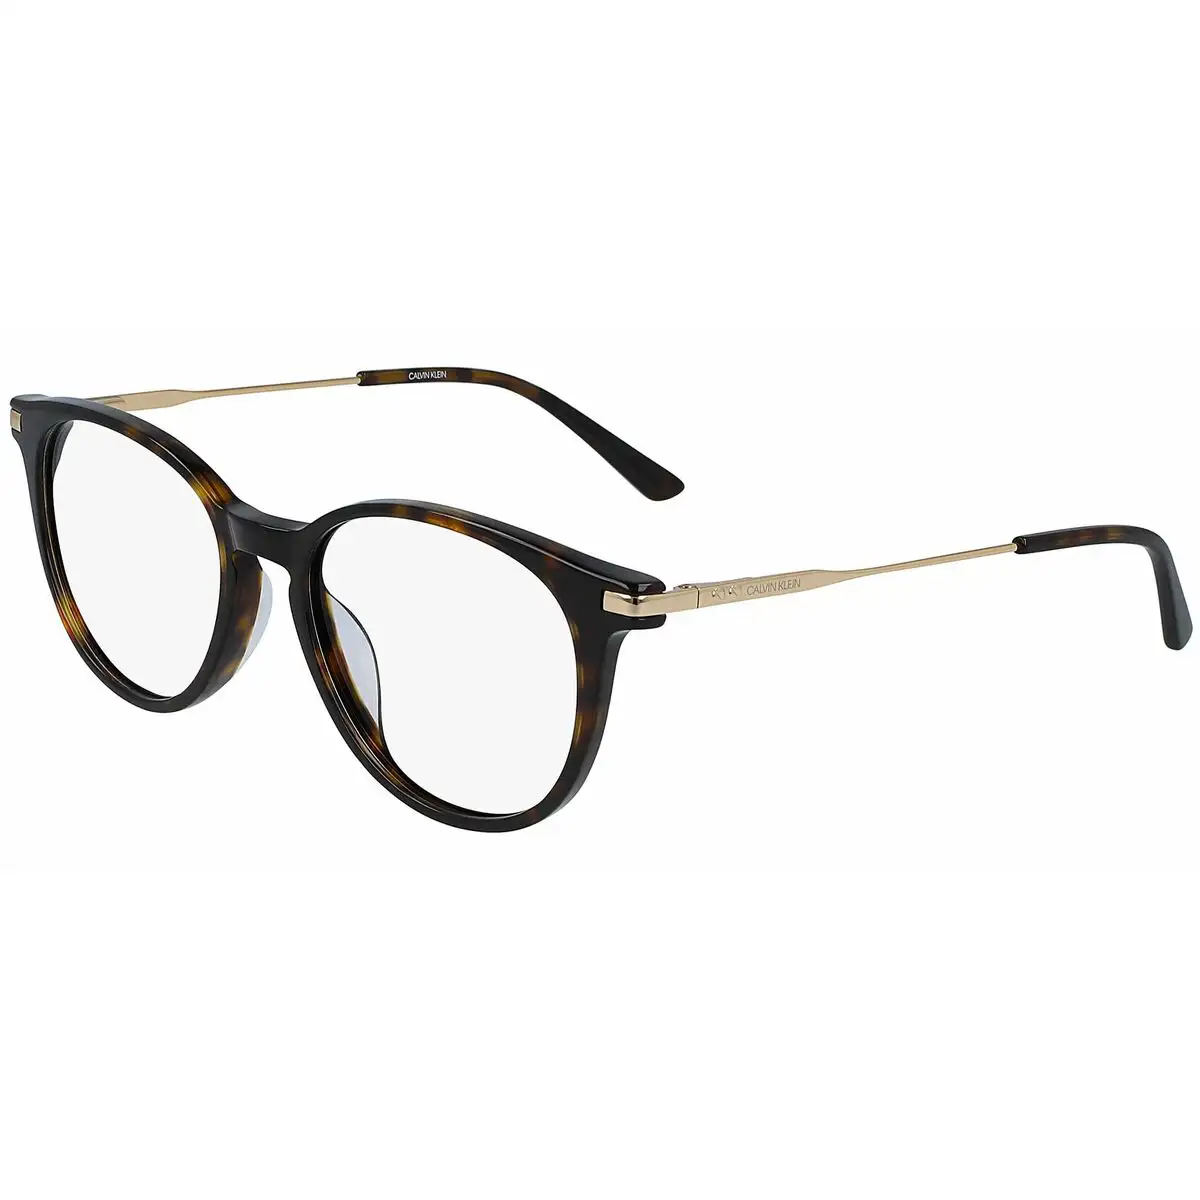 Monture de lunettes homme calvin klein ck19712_9981. DIAYTAR SENEGAL - Là où Chaque Achat a du Sens. Explorez notre gamme et choisissez des produits qui racontent une histoire, votre histoire.